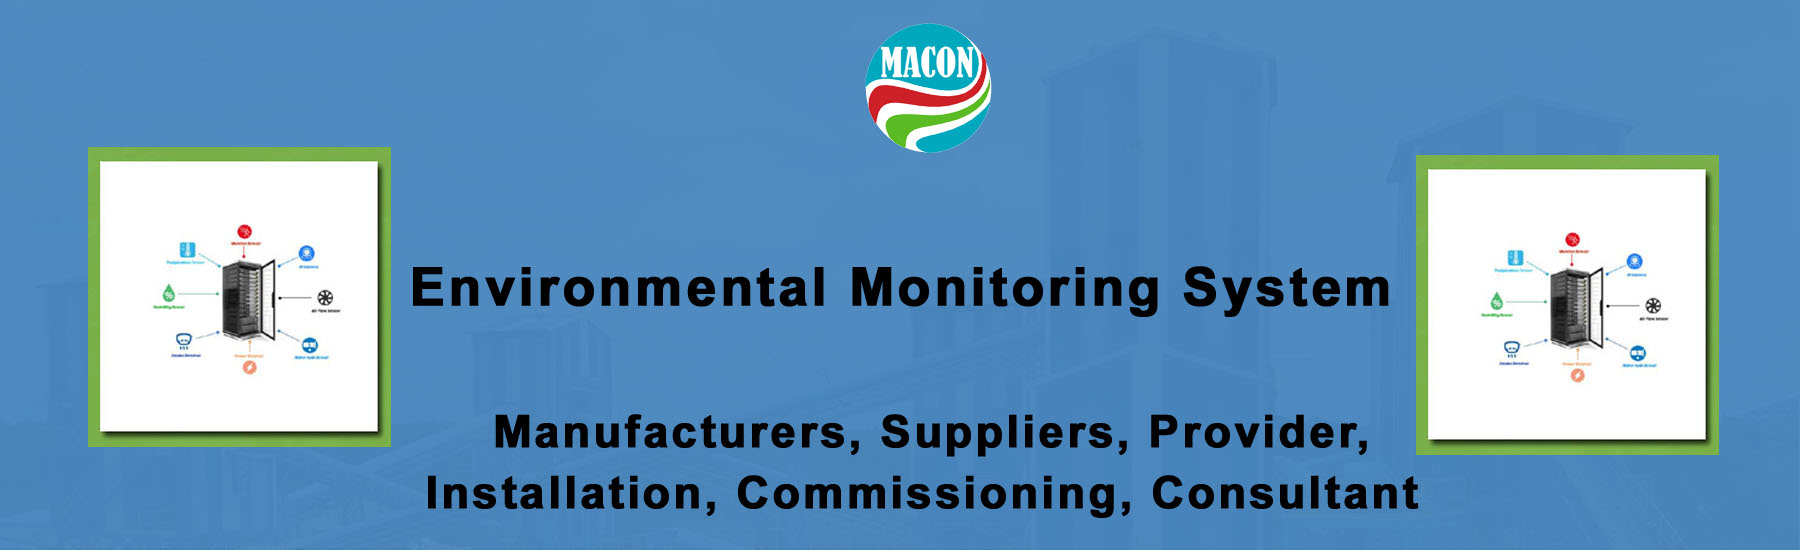 Environmental Monitoring System